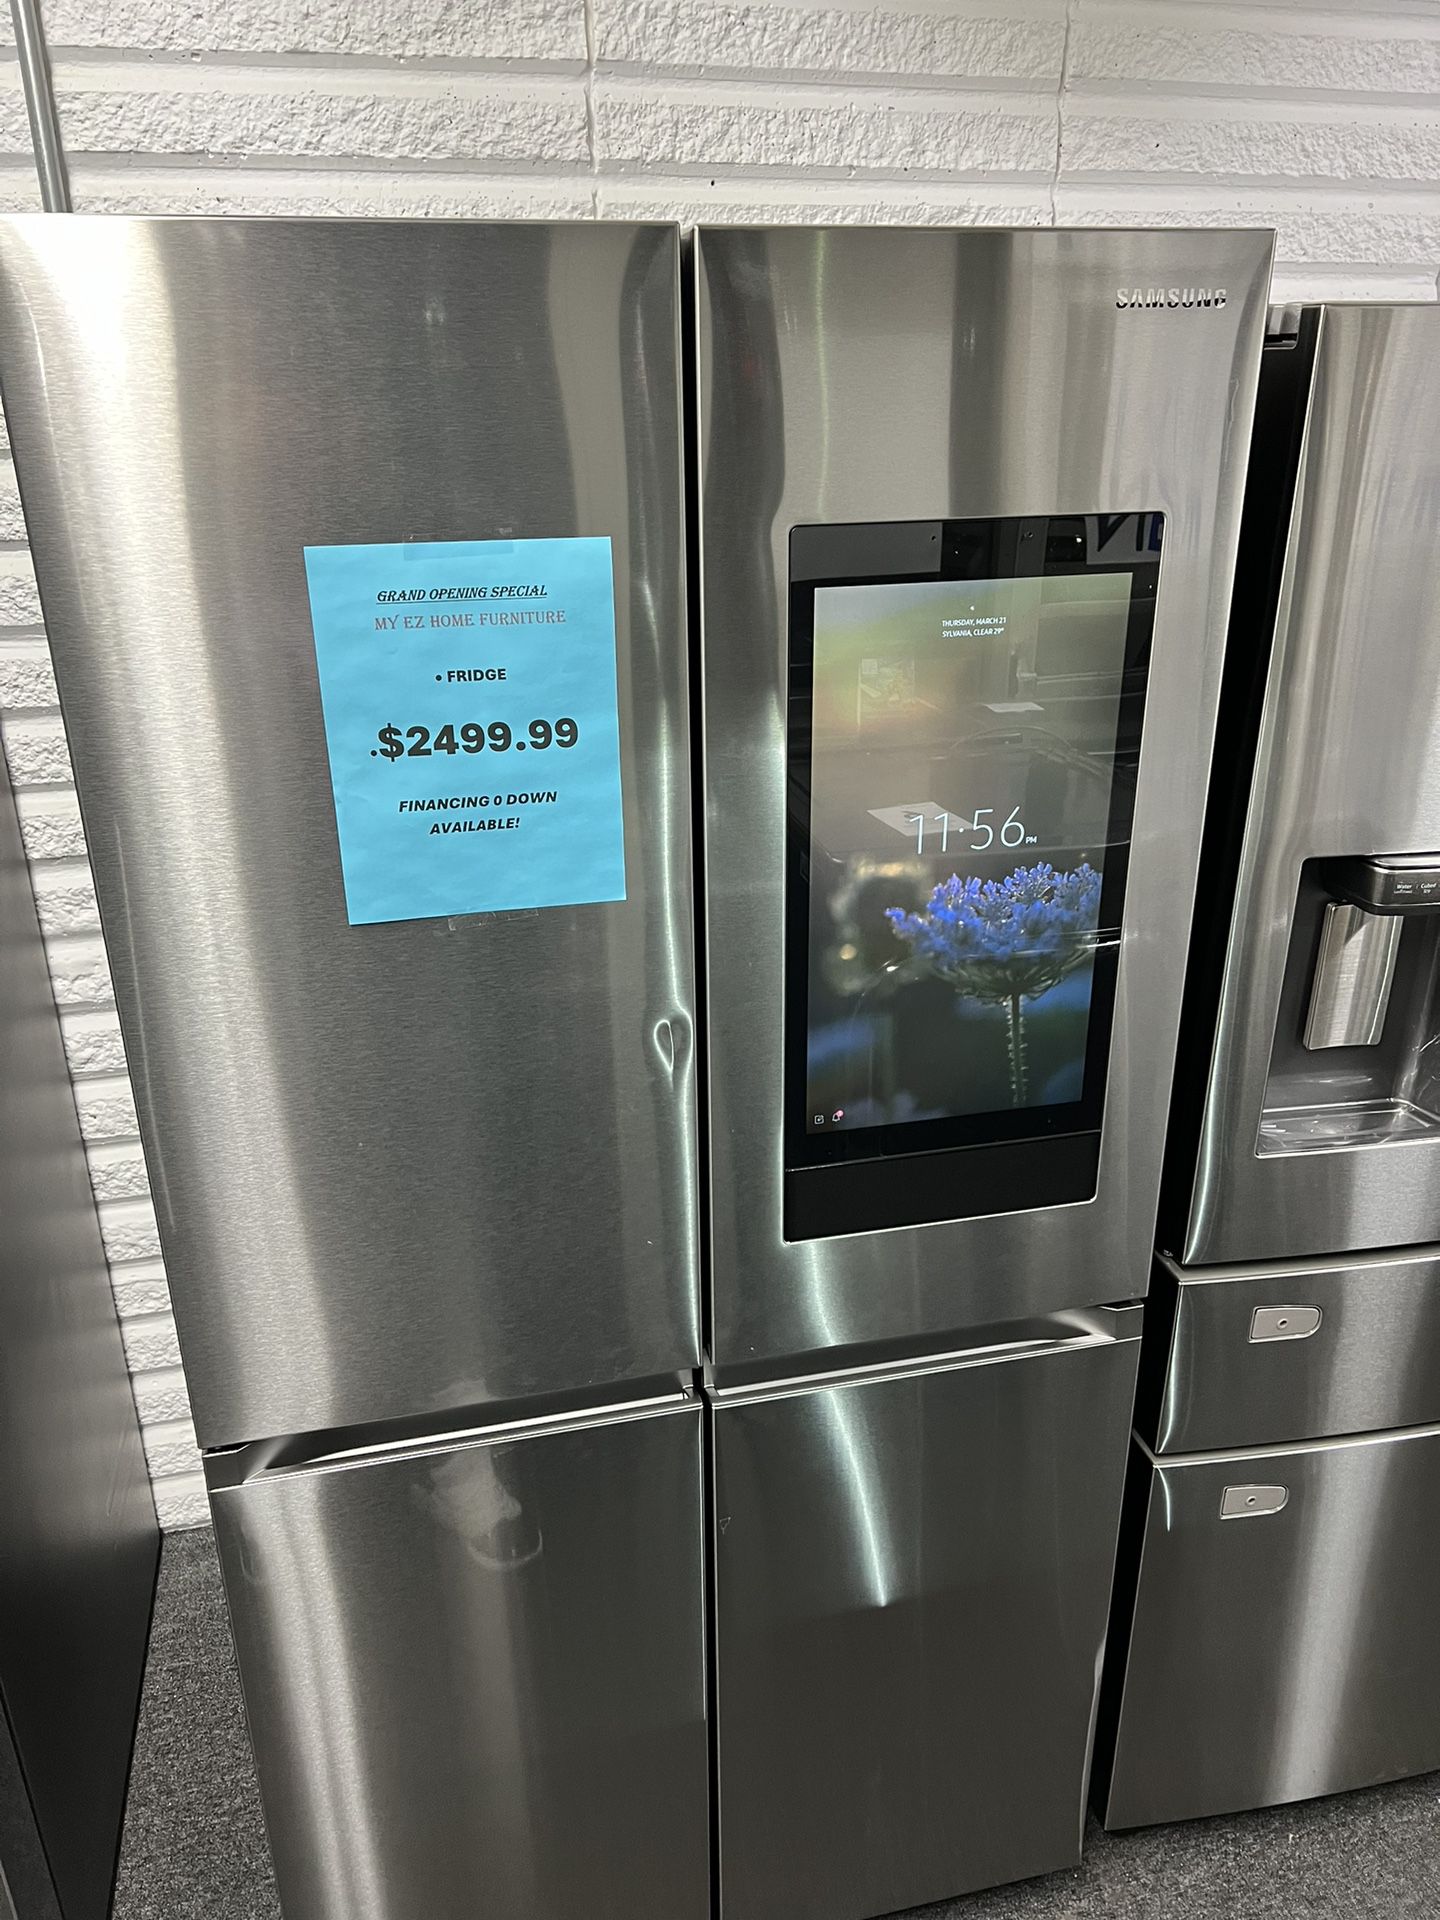 SAMSUNG TABLET Refrigerator Brand New